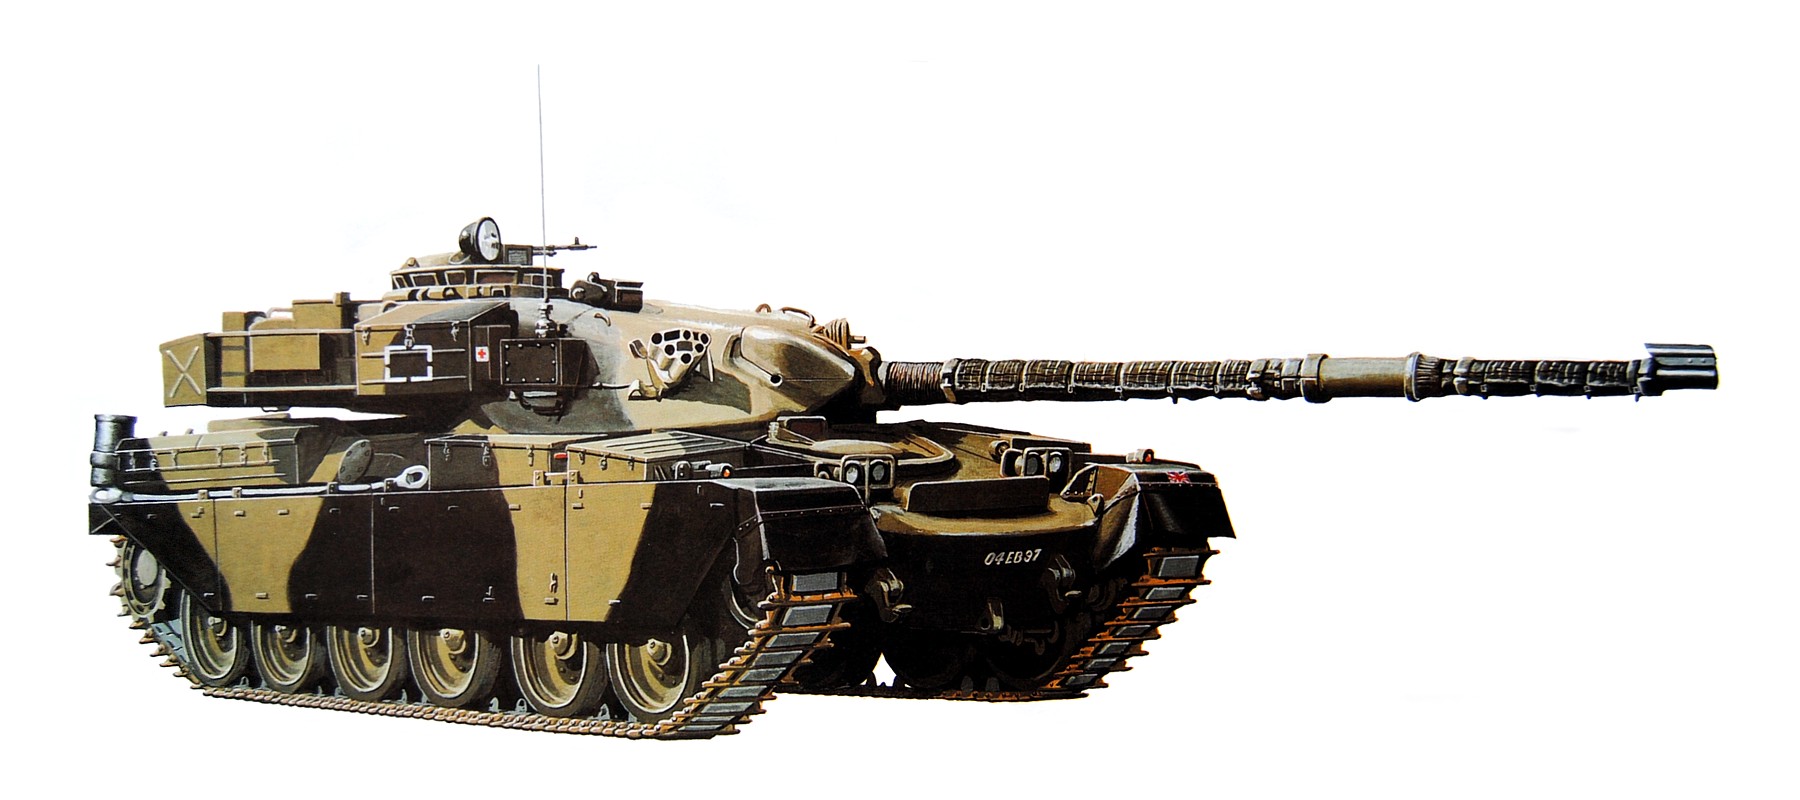 Chieftain tank. 